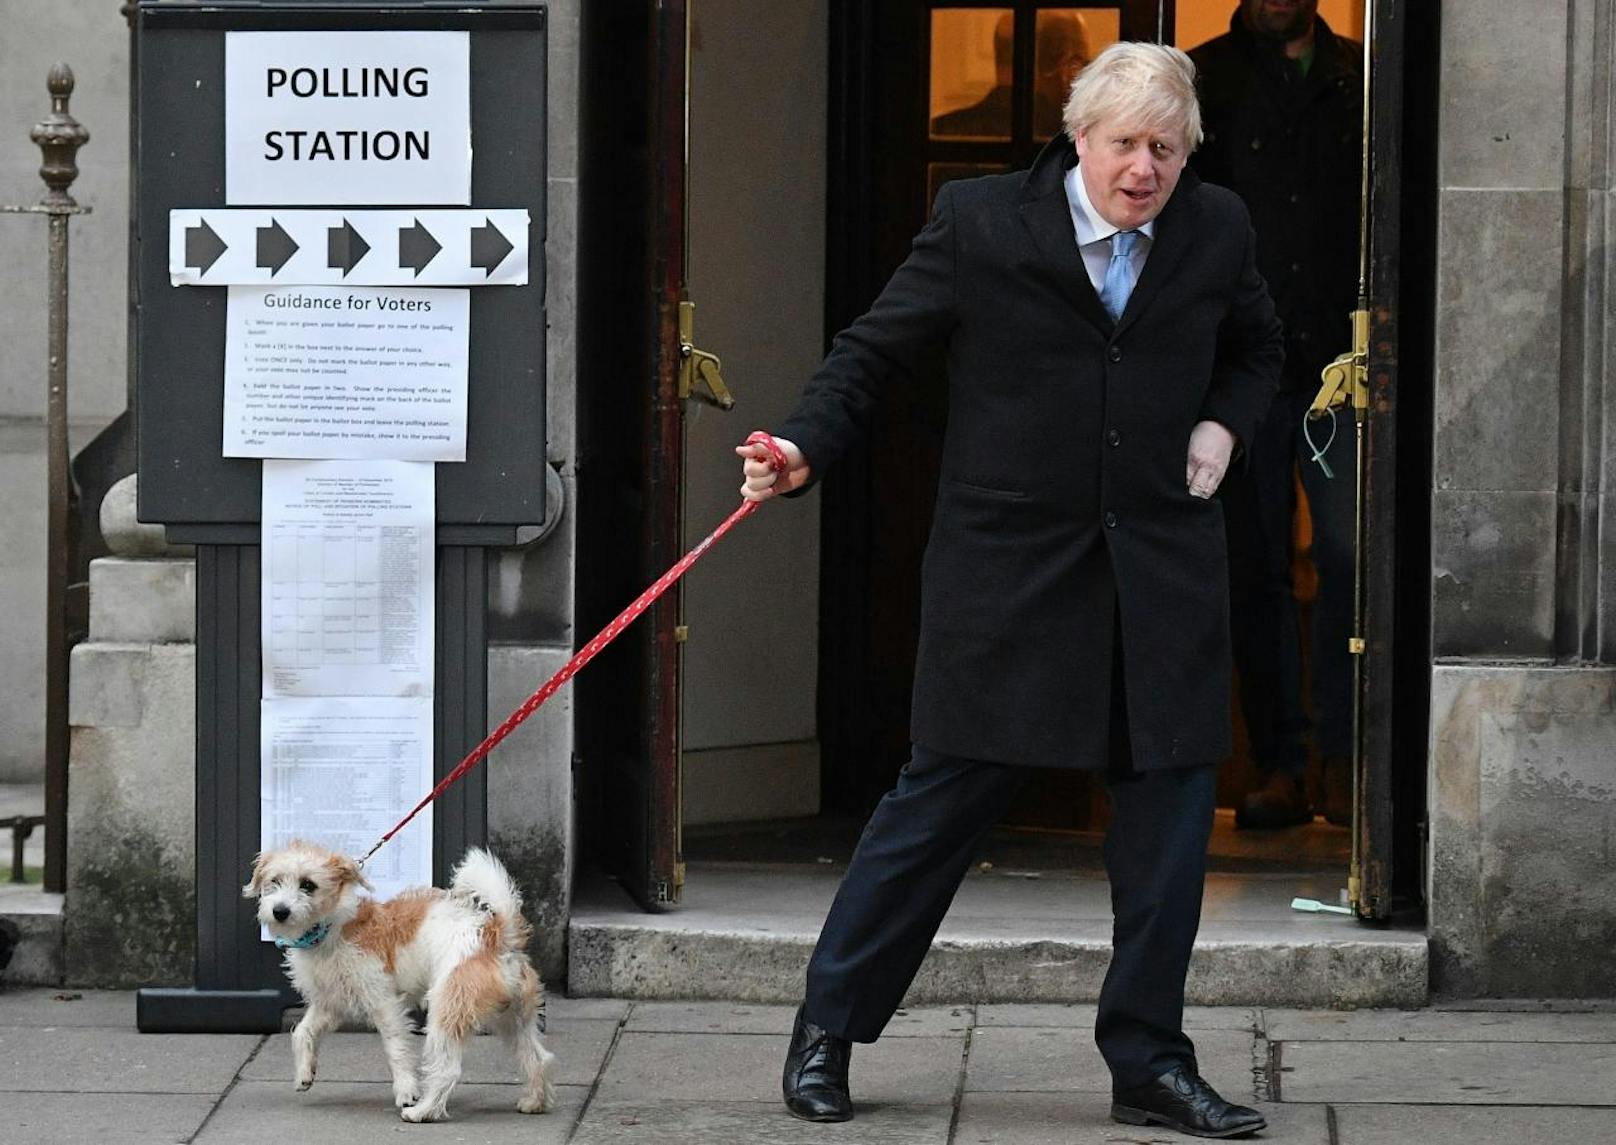 Dieser erschien mit seinem Hund beim Wahllokal. Was du sonst noch zur Wahl wissen musst, siehst du auf den nächsten Bildern.